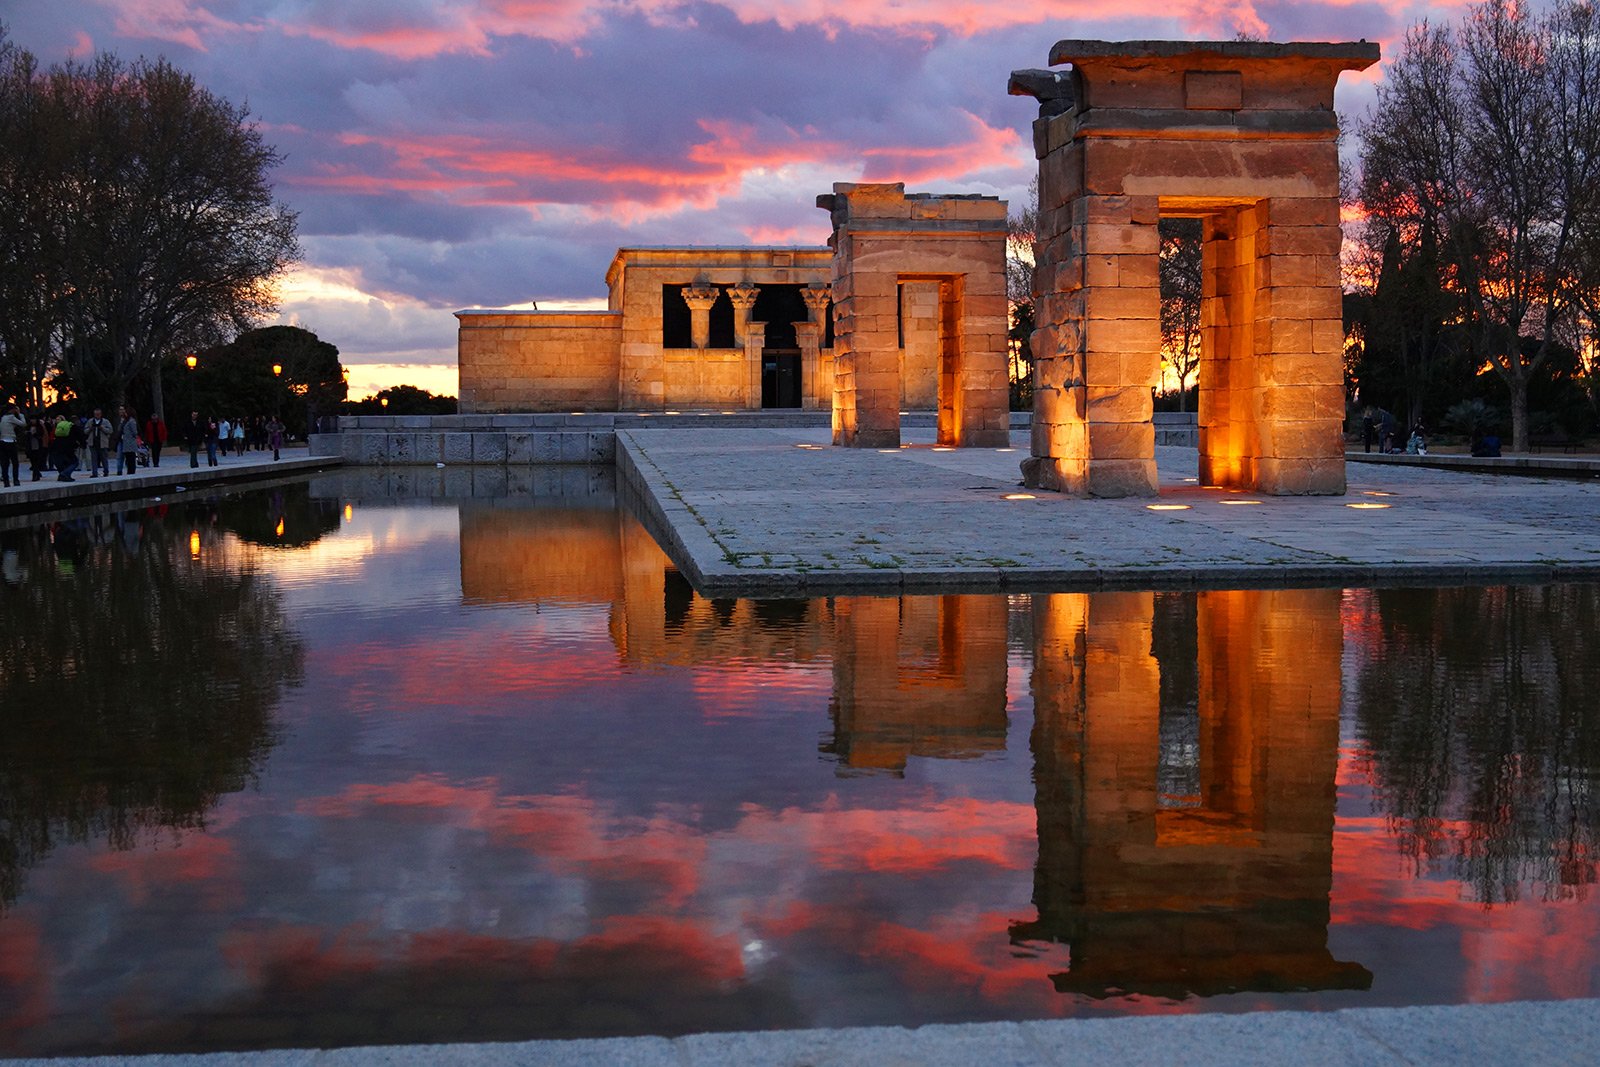 Как встретить закат на смотровой площадке египетского храма в Мадриде